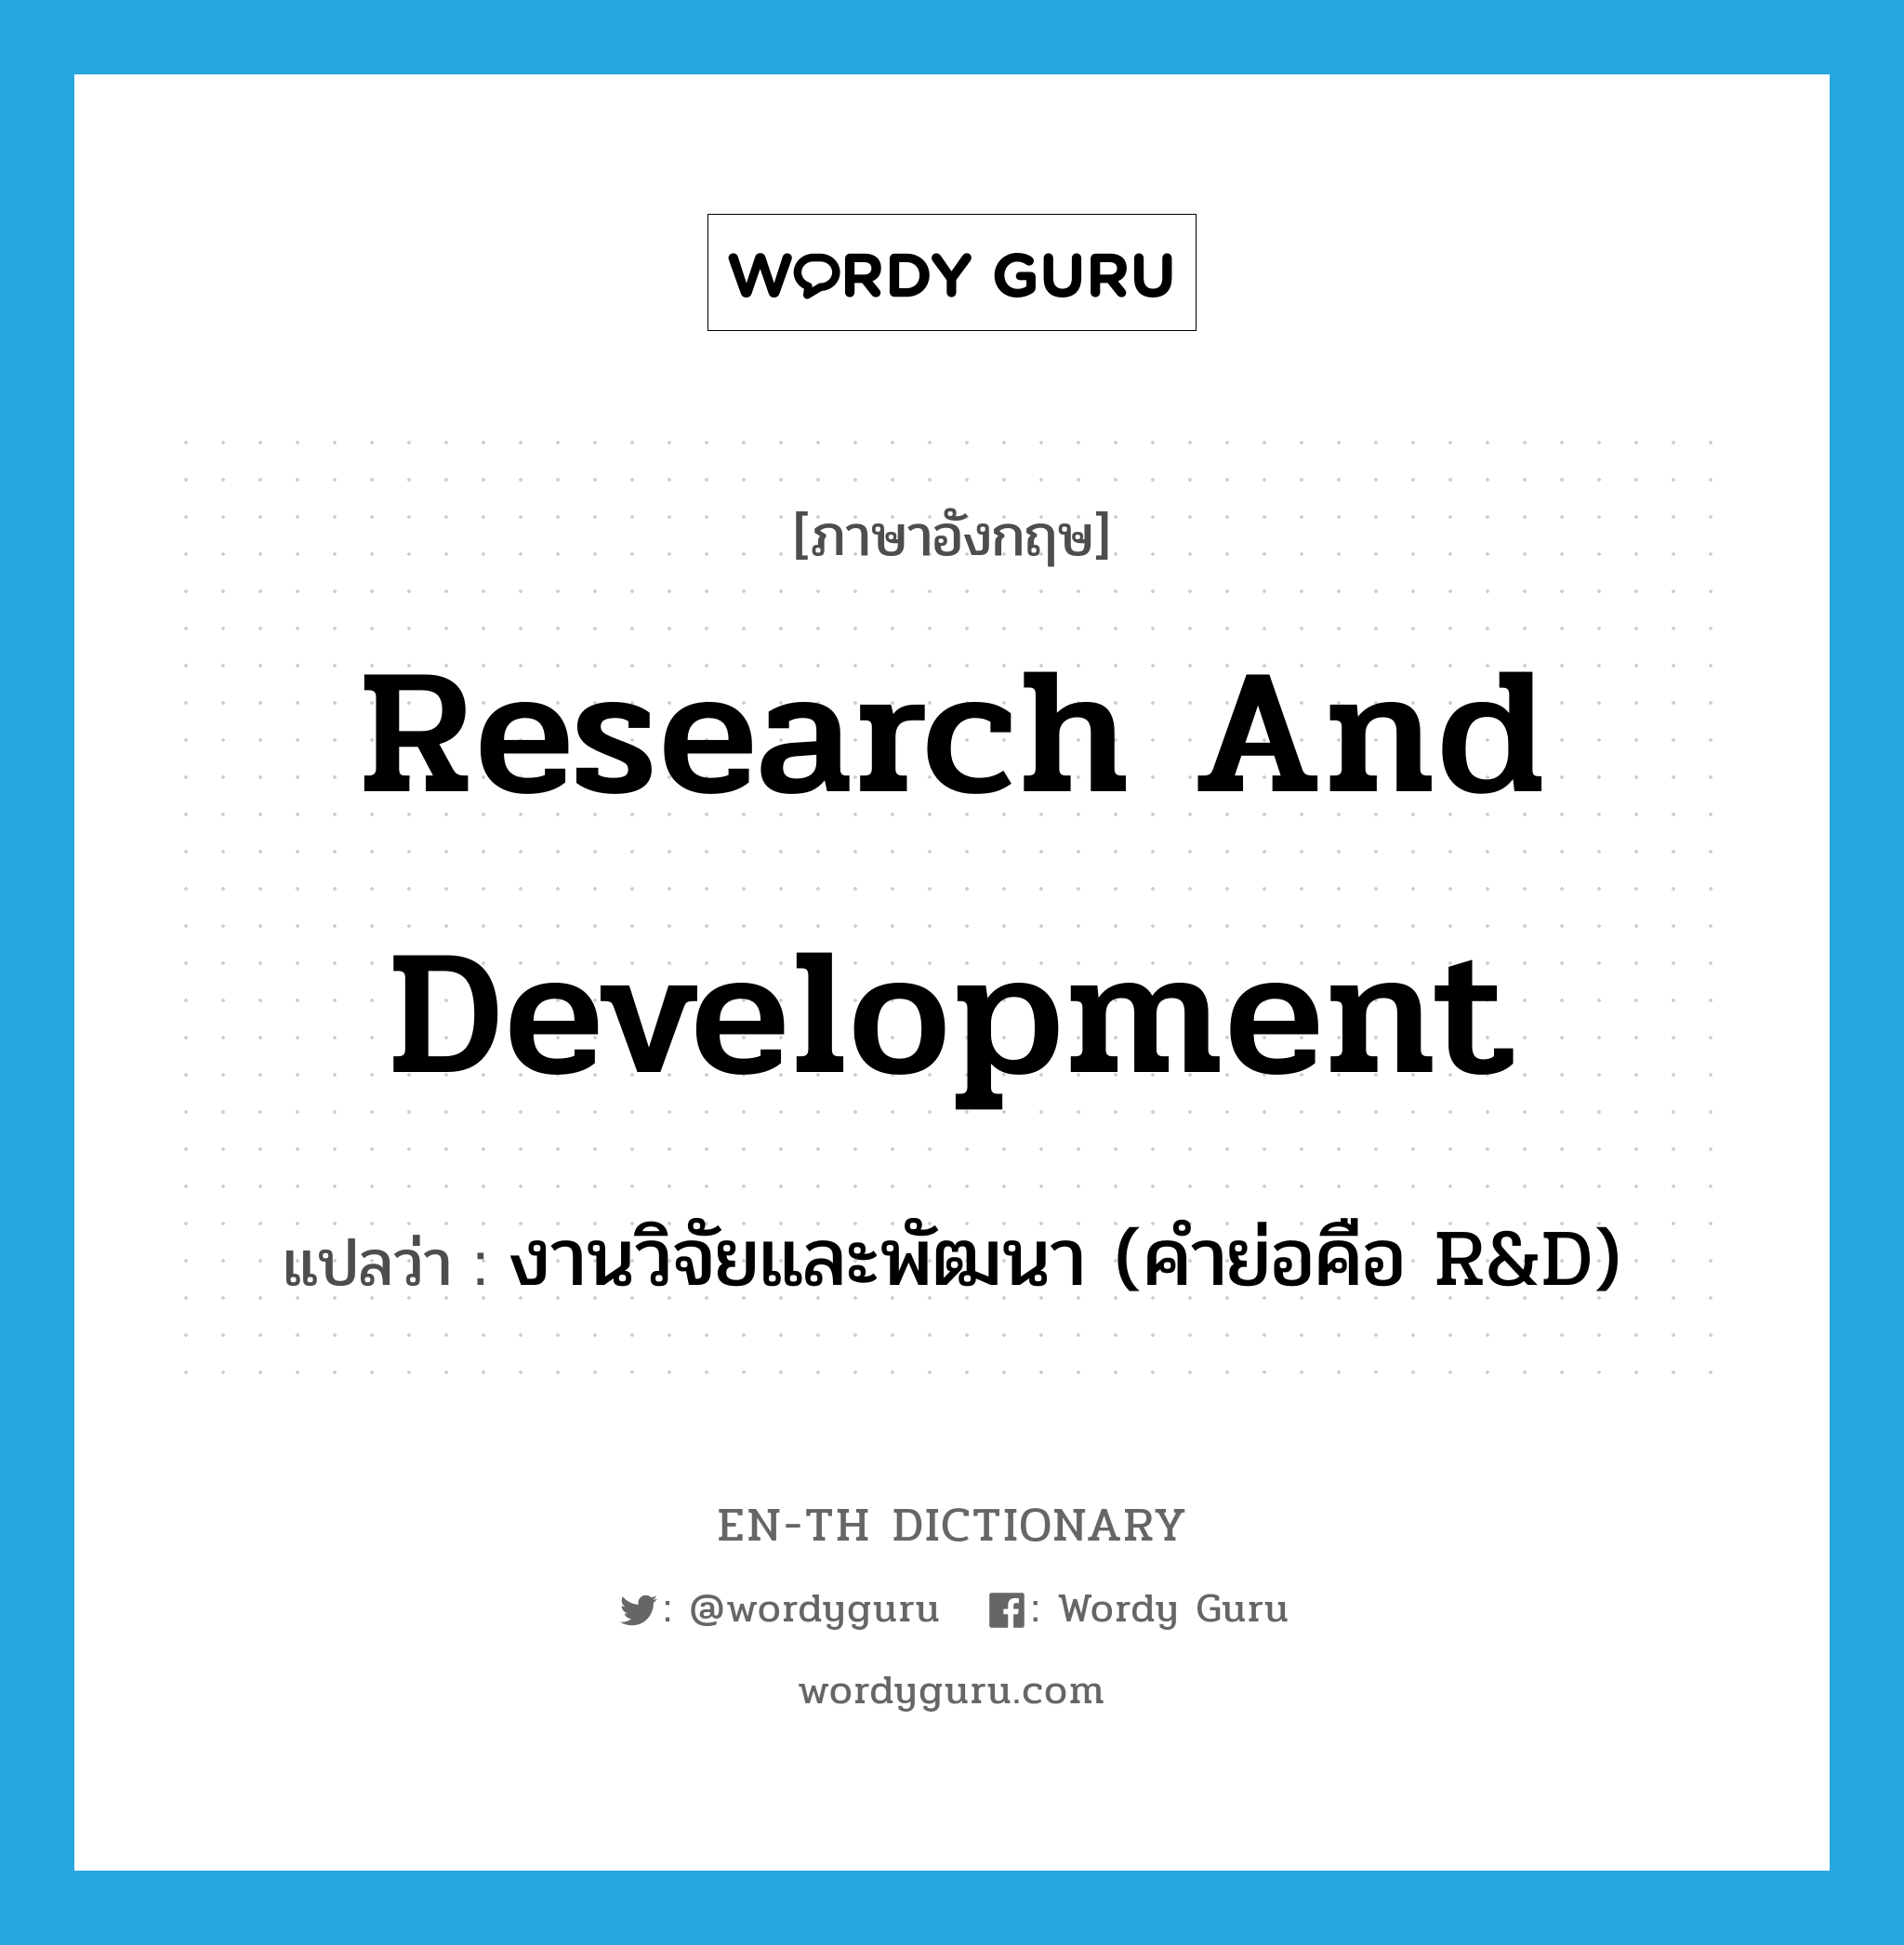 งานวิจัยและพัฒนา (คำย่อคือ R&D) ภาษาอังกฤษ?, คำศัพท์ภาษาอังกฤษ งานวิจัยและพัฒนา (คำย่อคือ R&D) แปลว่า research and development ประเภท N หมวด N